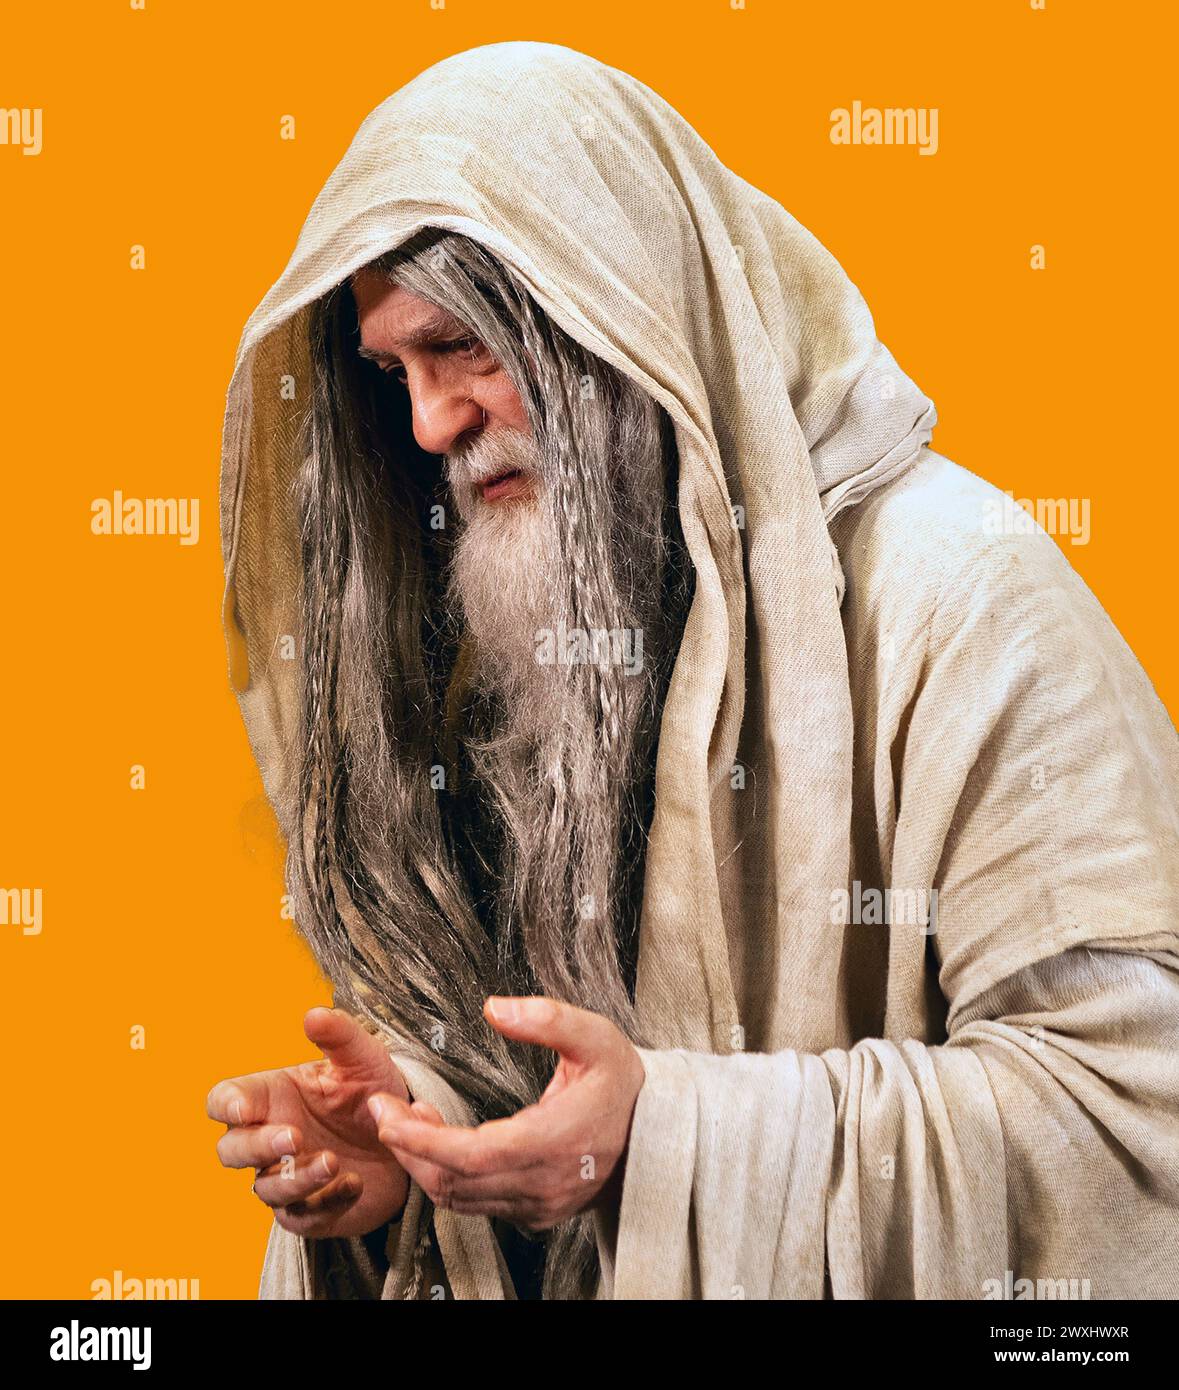 Porträt eines alten Mannes mit einem Bart und langen Haaren, gekleidet in einem hellbraunen kapuzenumhang. Farbenfroher gelber Hintergrund. Mark Dunn / Mark Dunn Fotografie Stockfoto